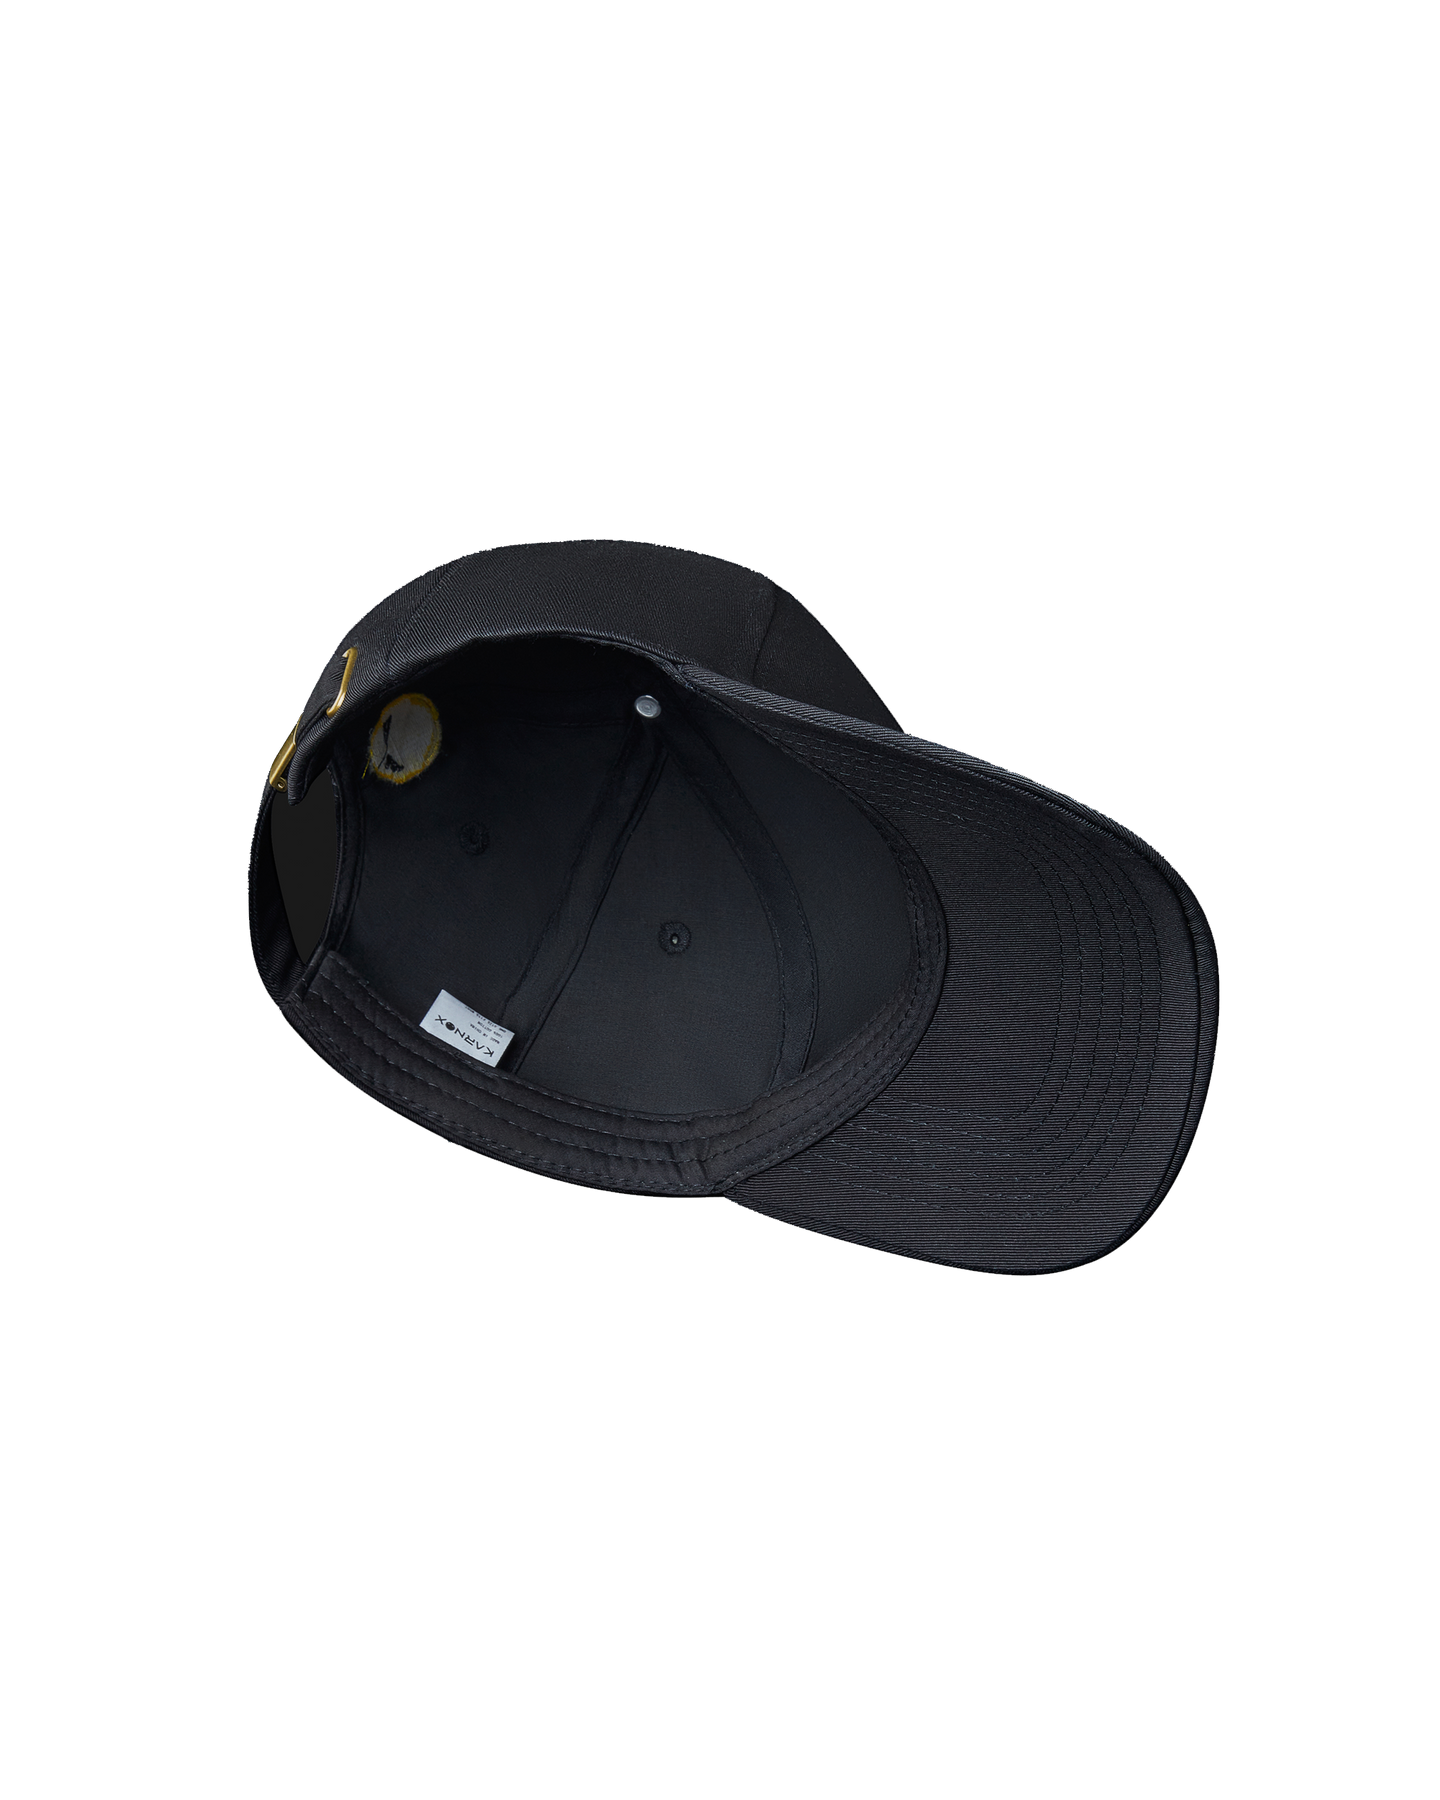 Karnox Peaked cap